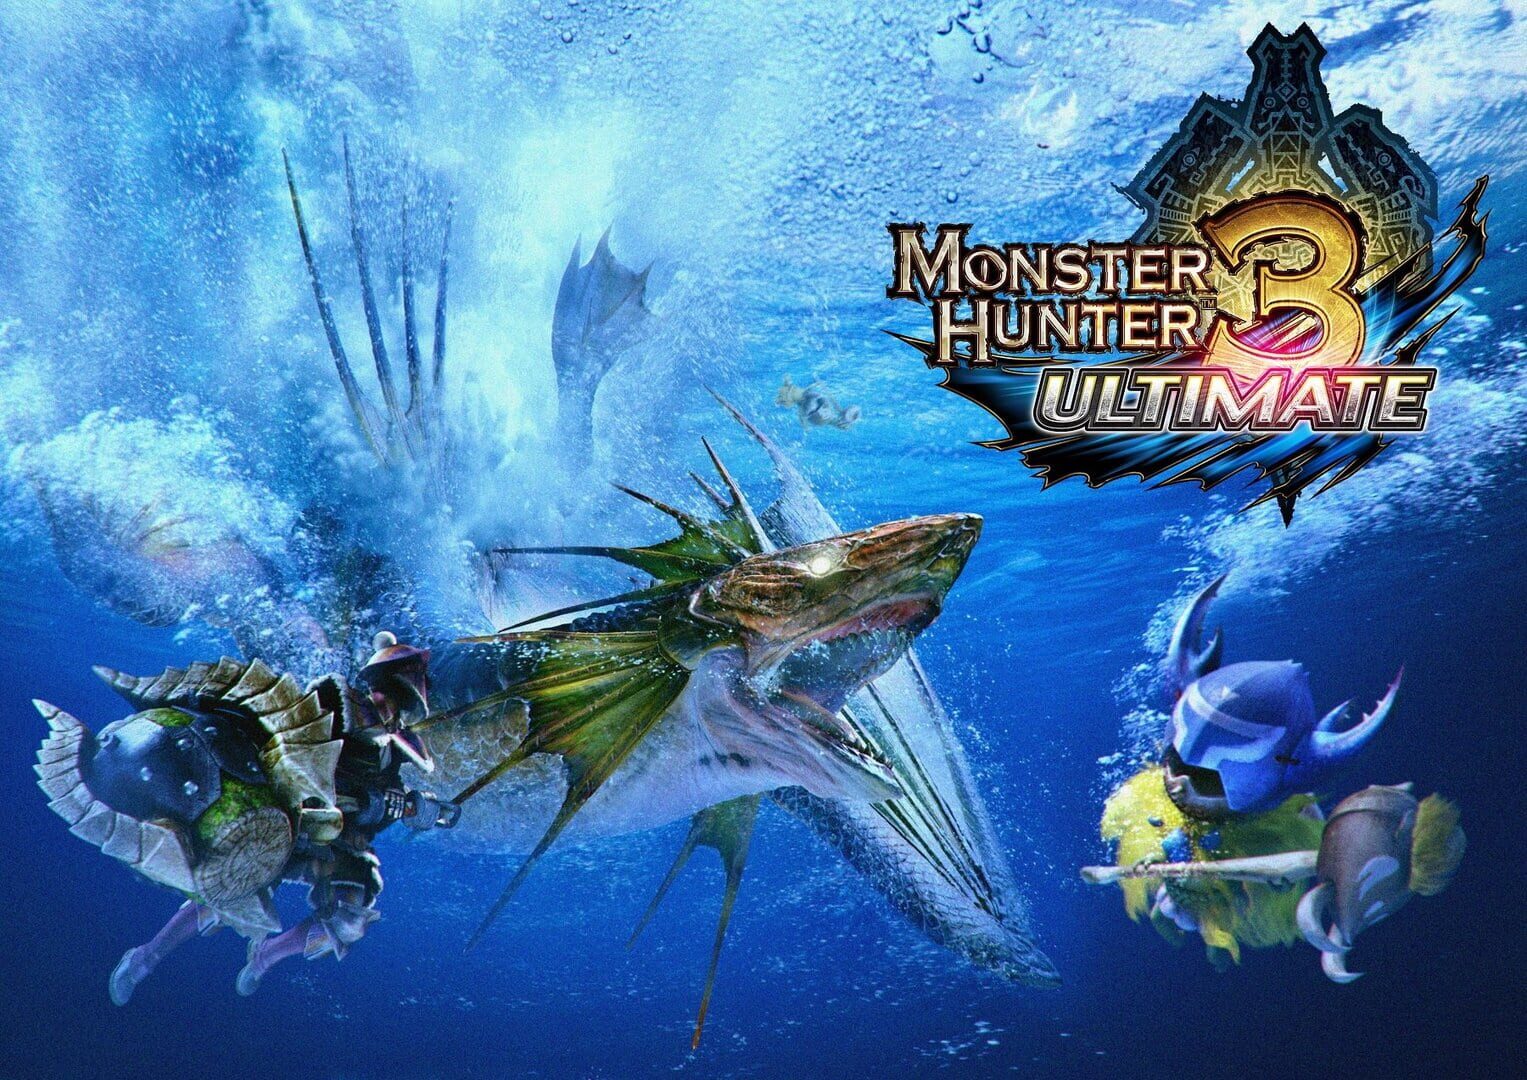 Arte - Monster Hunter 3 Ultimate